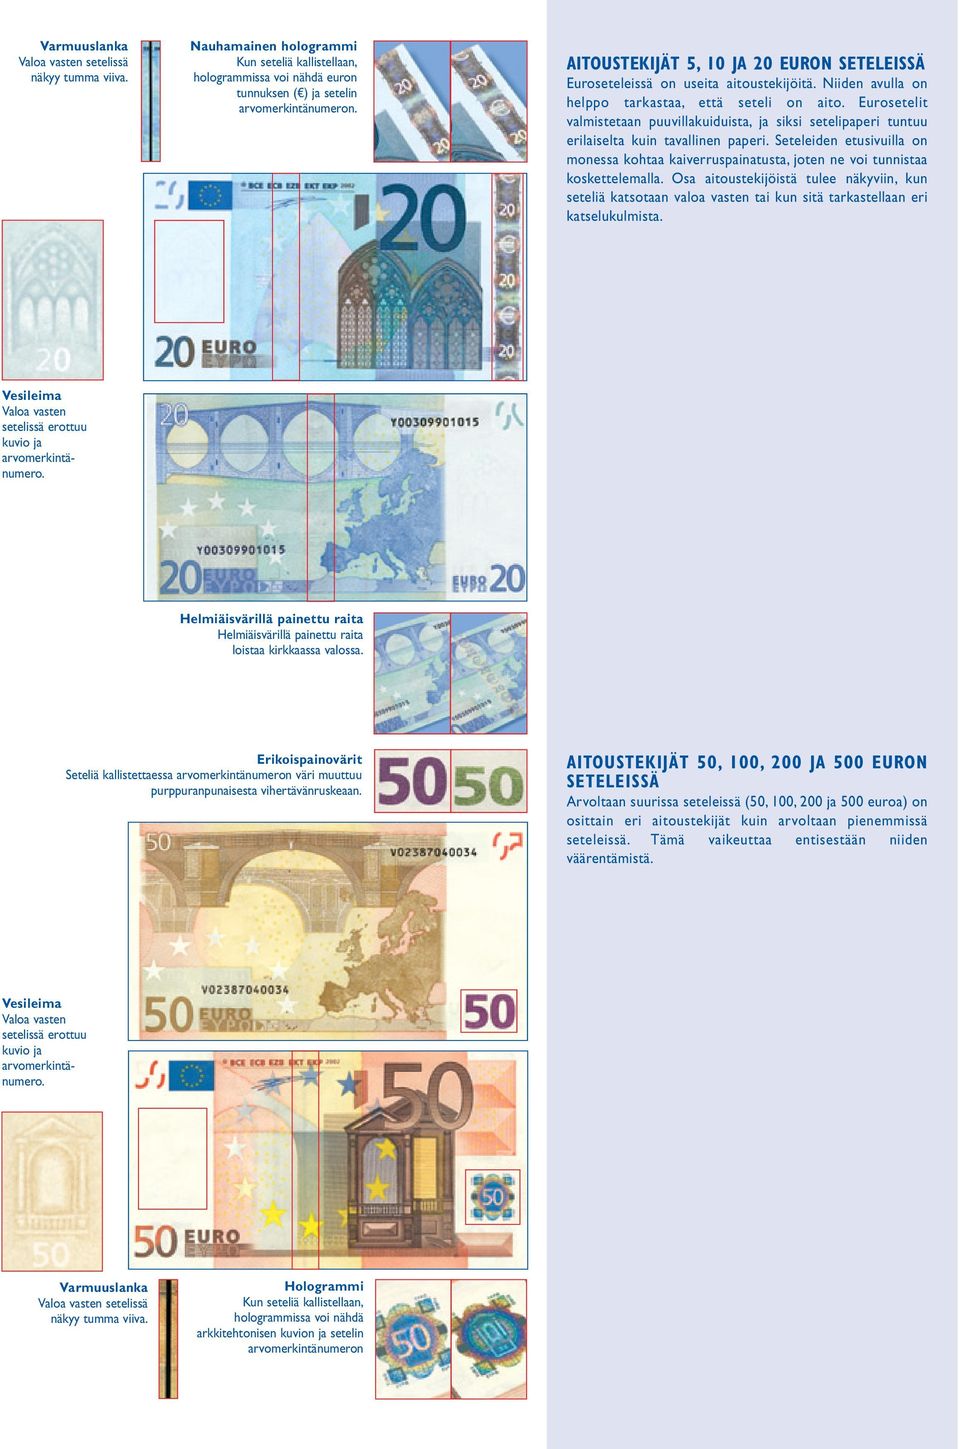 Eurosetelit valmistetaan puuvillakuiduista, ja siksi setelipaperi tuntuu erilaiselta kuin tavallinen paperi.